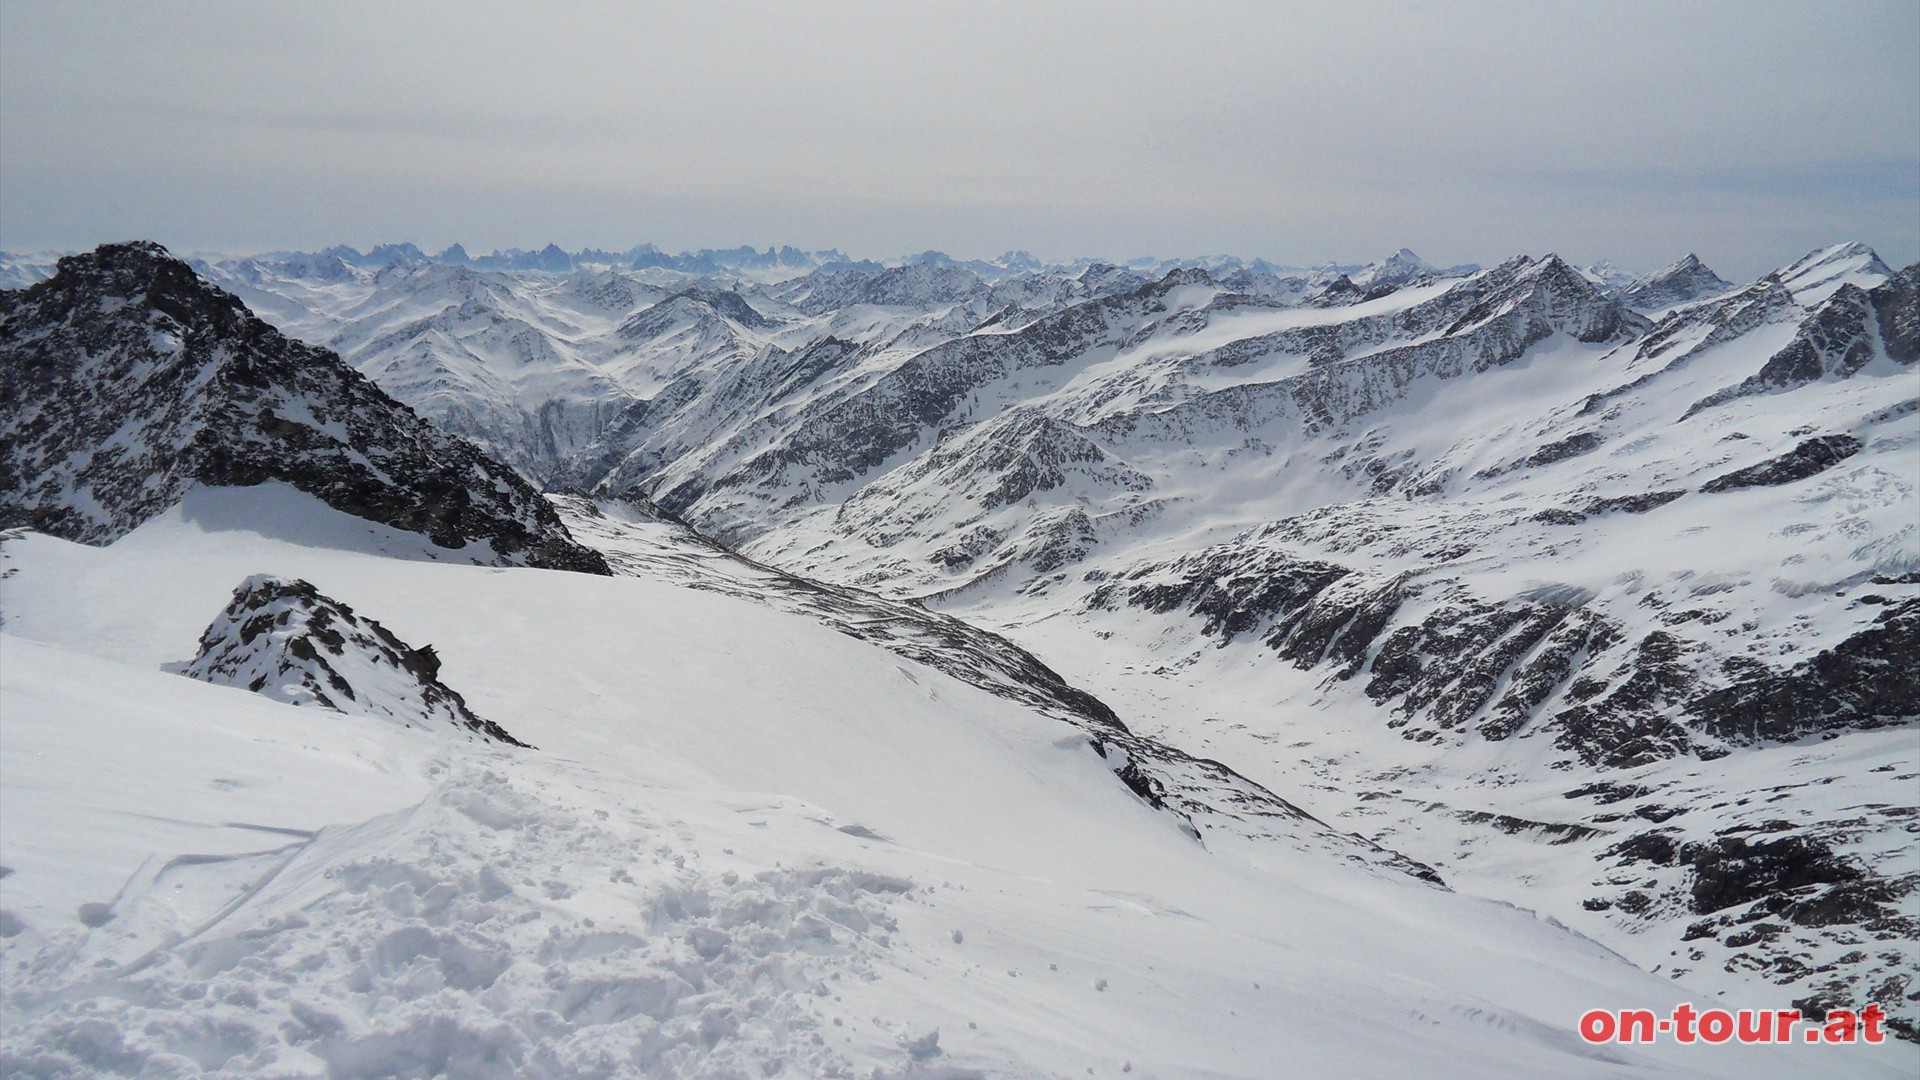 Im Sden links das Groe Happ, das Maurertal in der Mitte und am Horizont die Dolomiten.